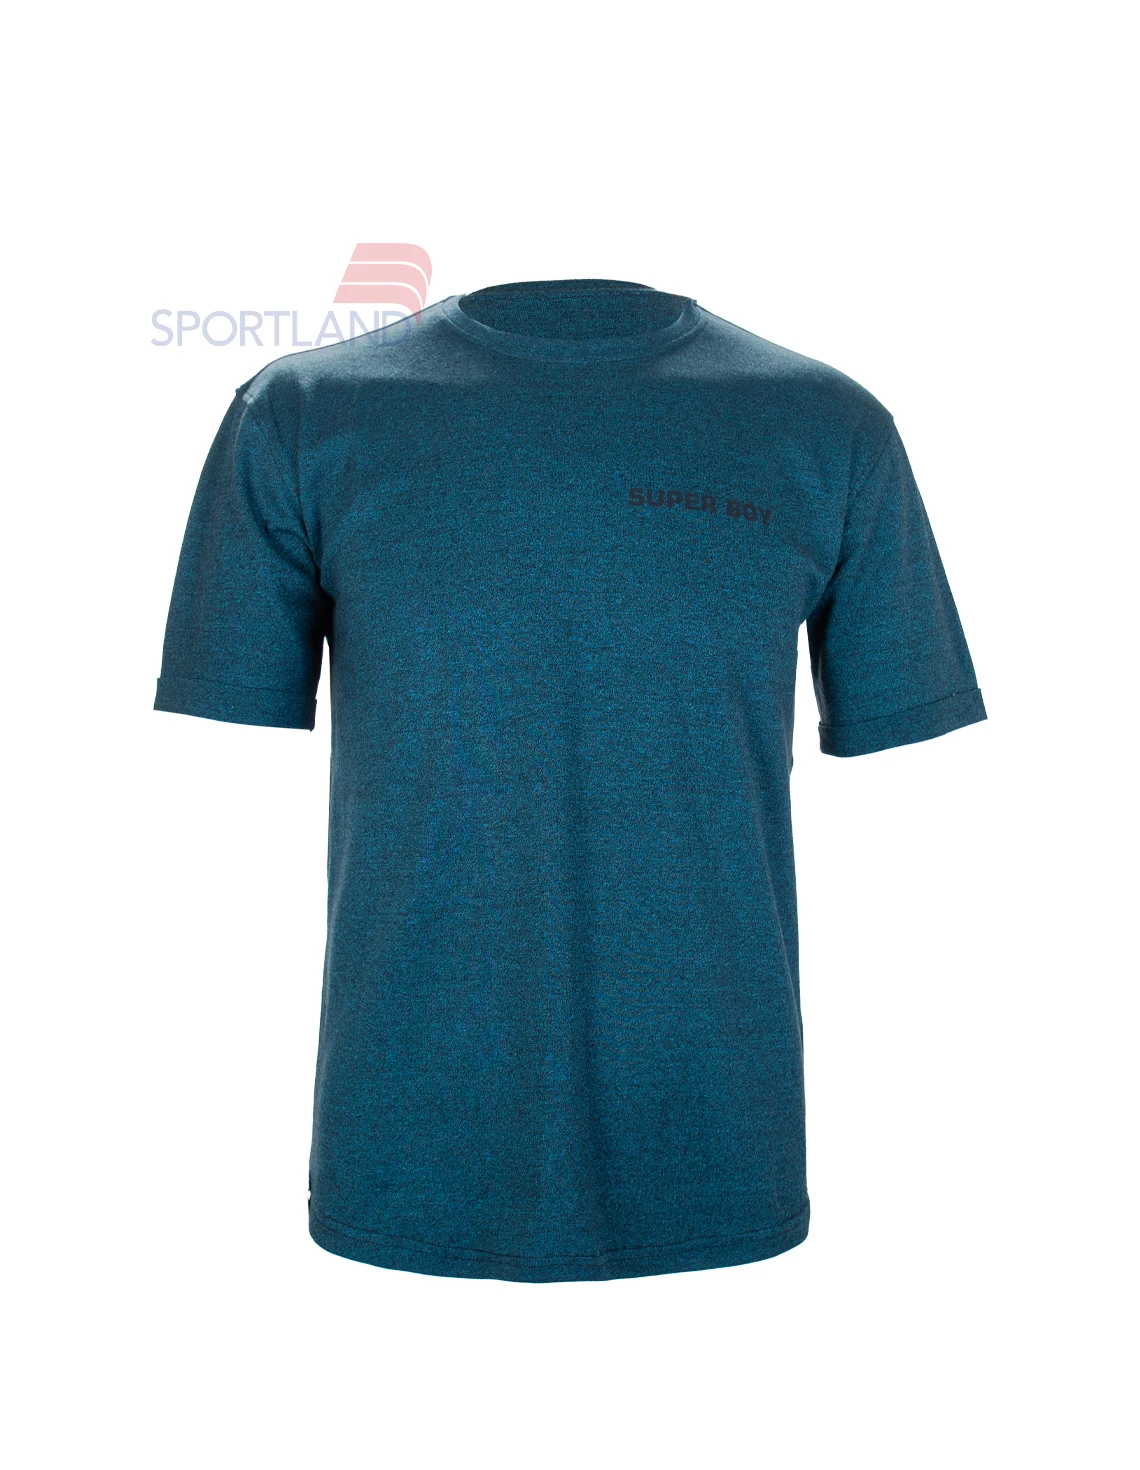 تی شرت ورزشی مردانه اسپورتلند Romey M